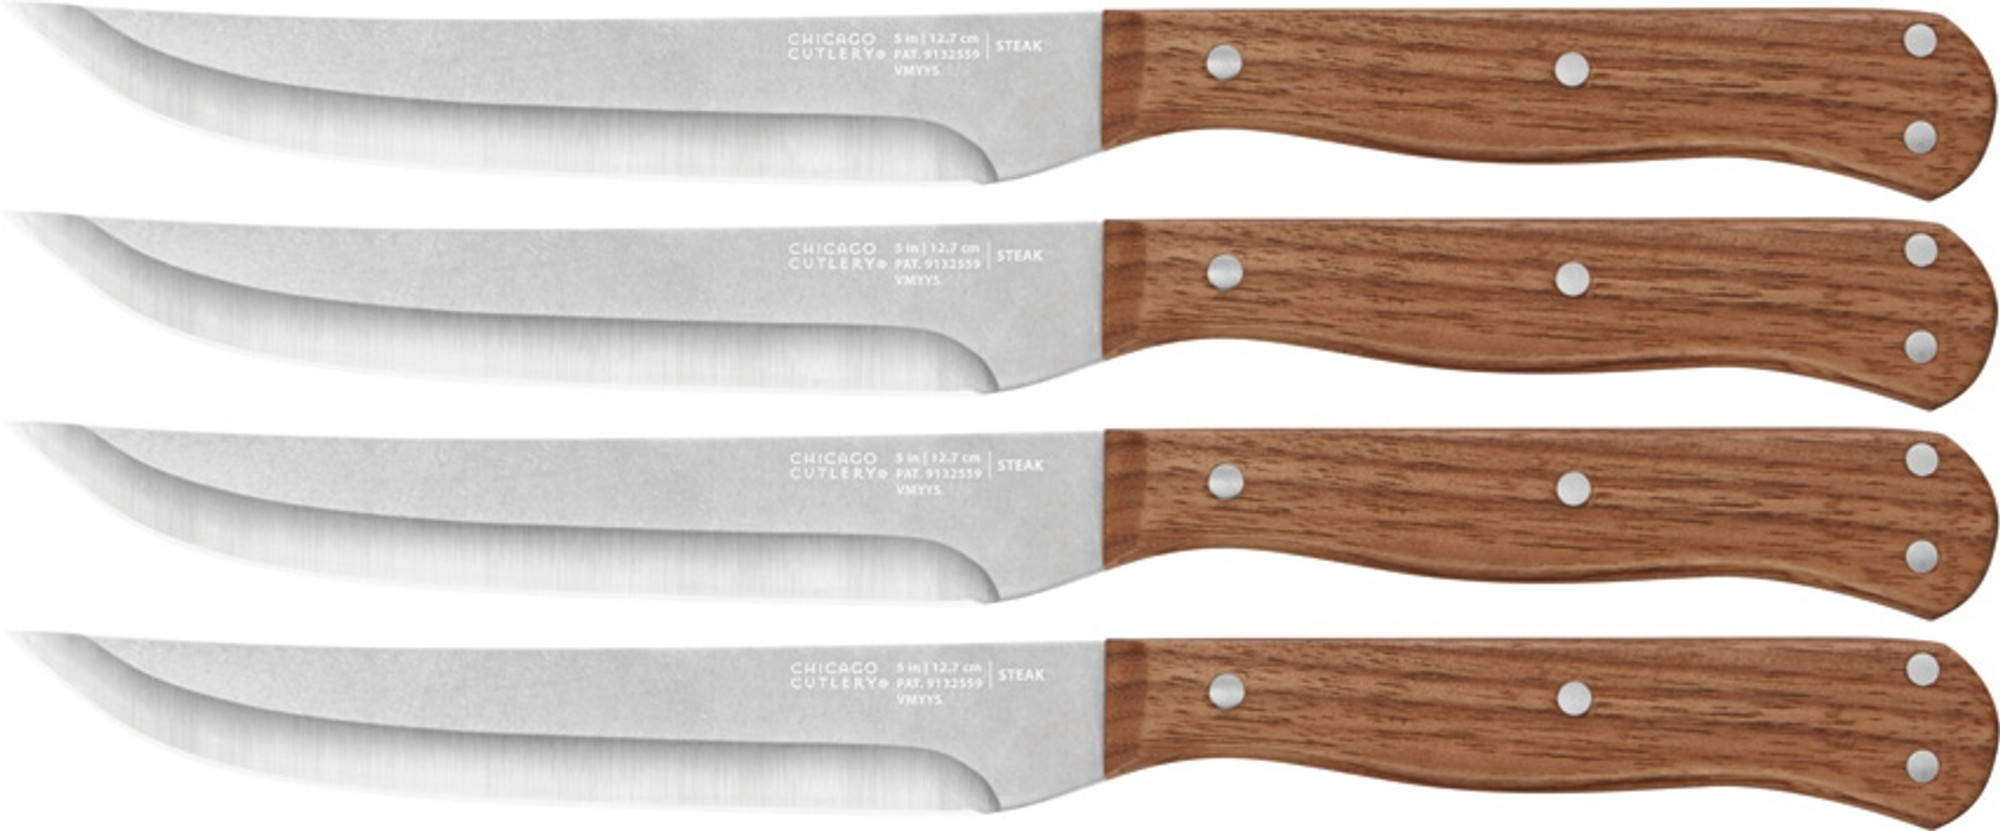 Rustica Steak Knives